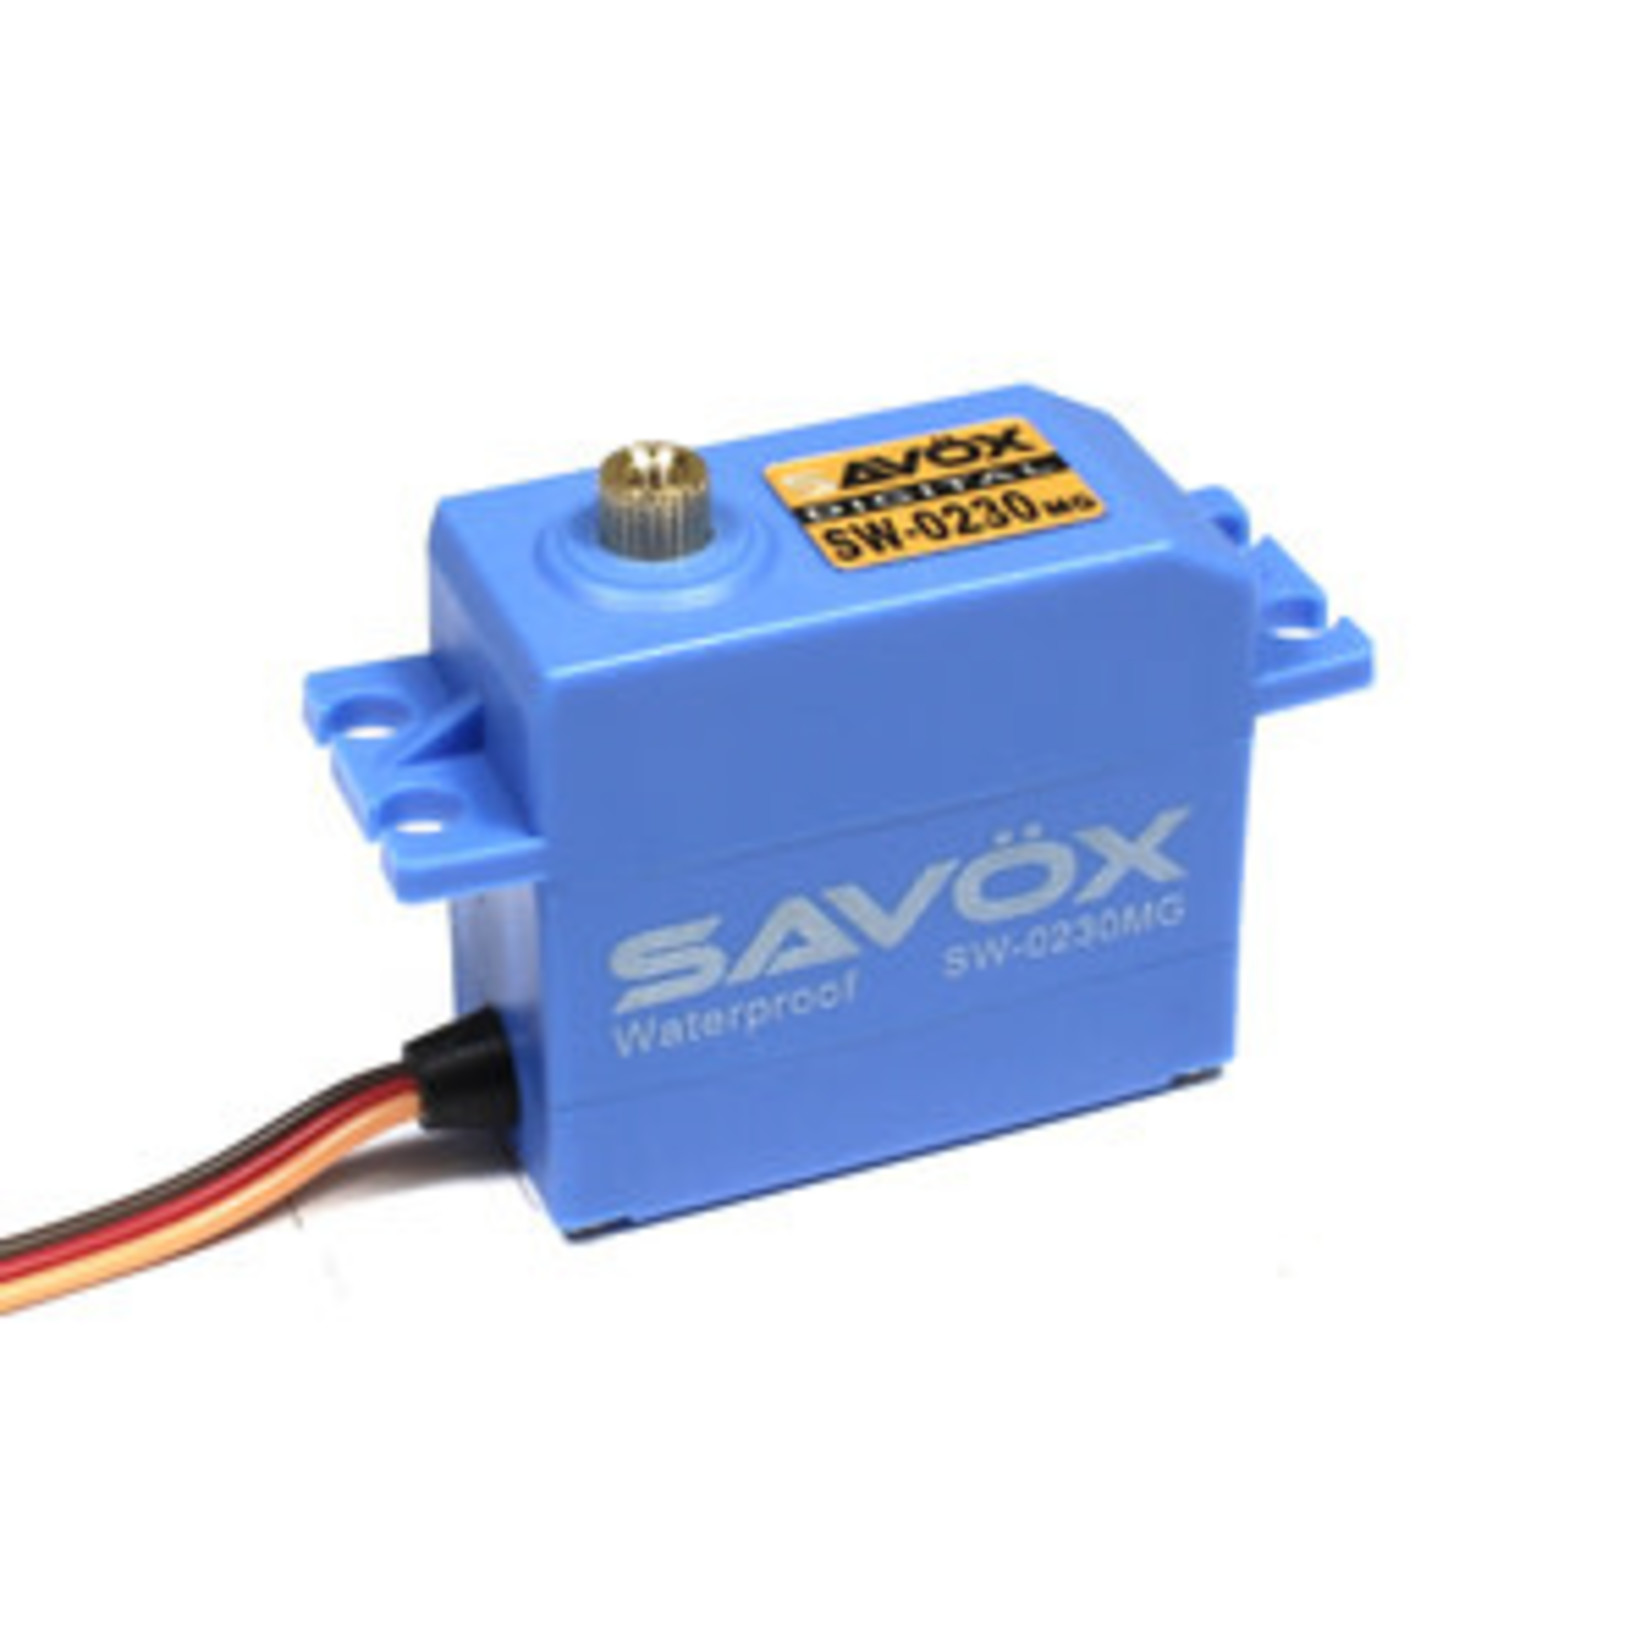 Savox Waterproof Standard Digital Servo 0.13sec / 111.1oz @ 7.4V (DISCONT)